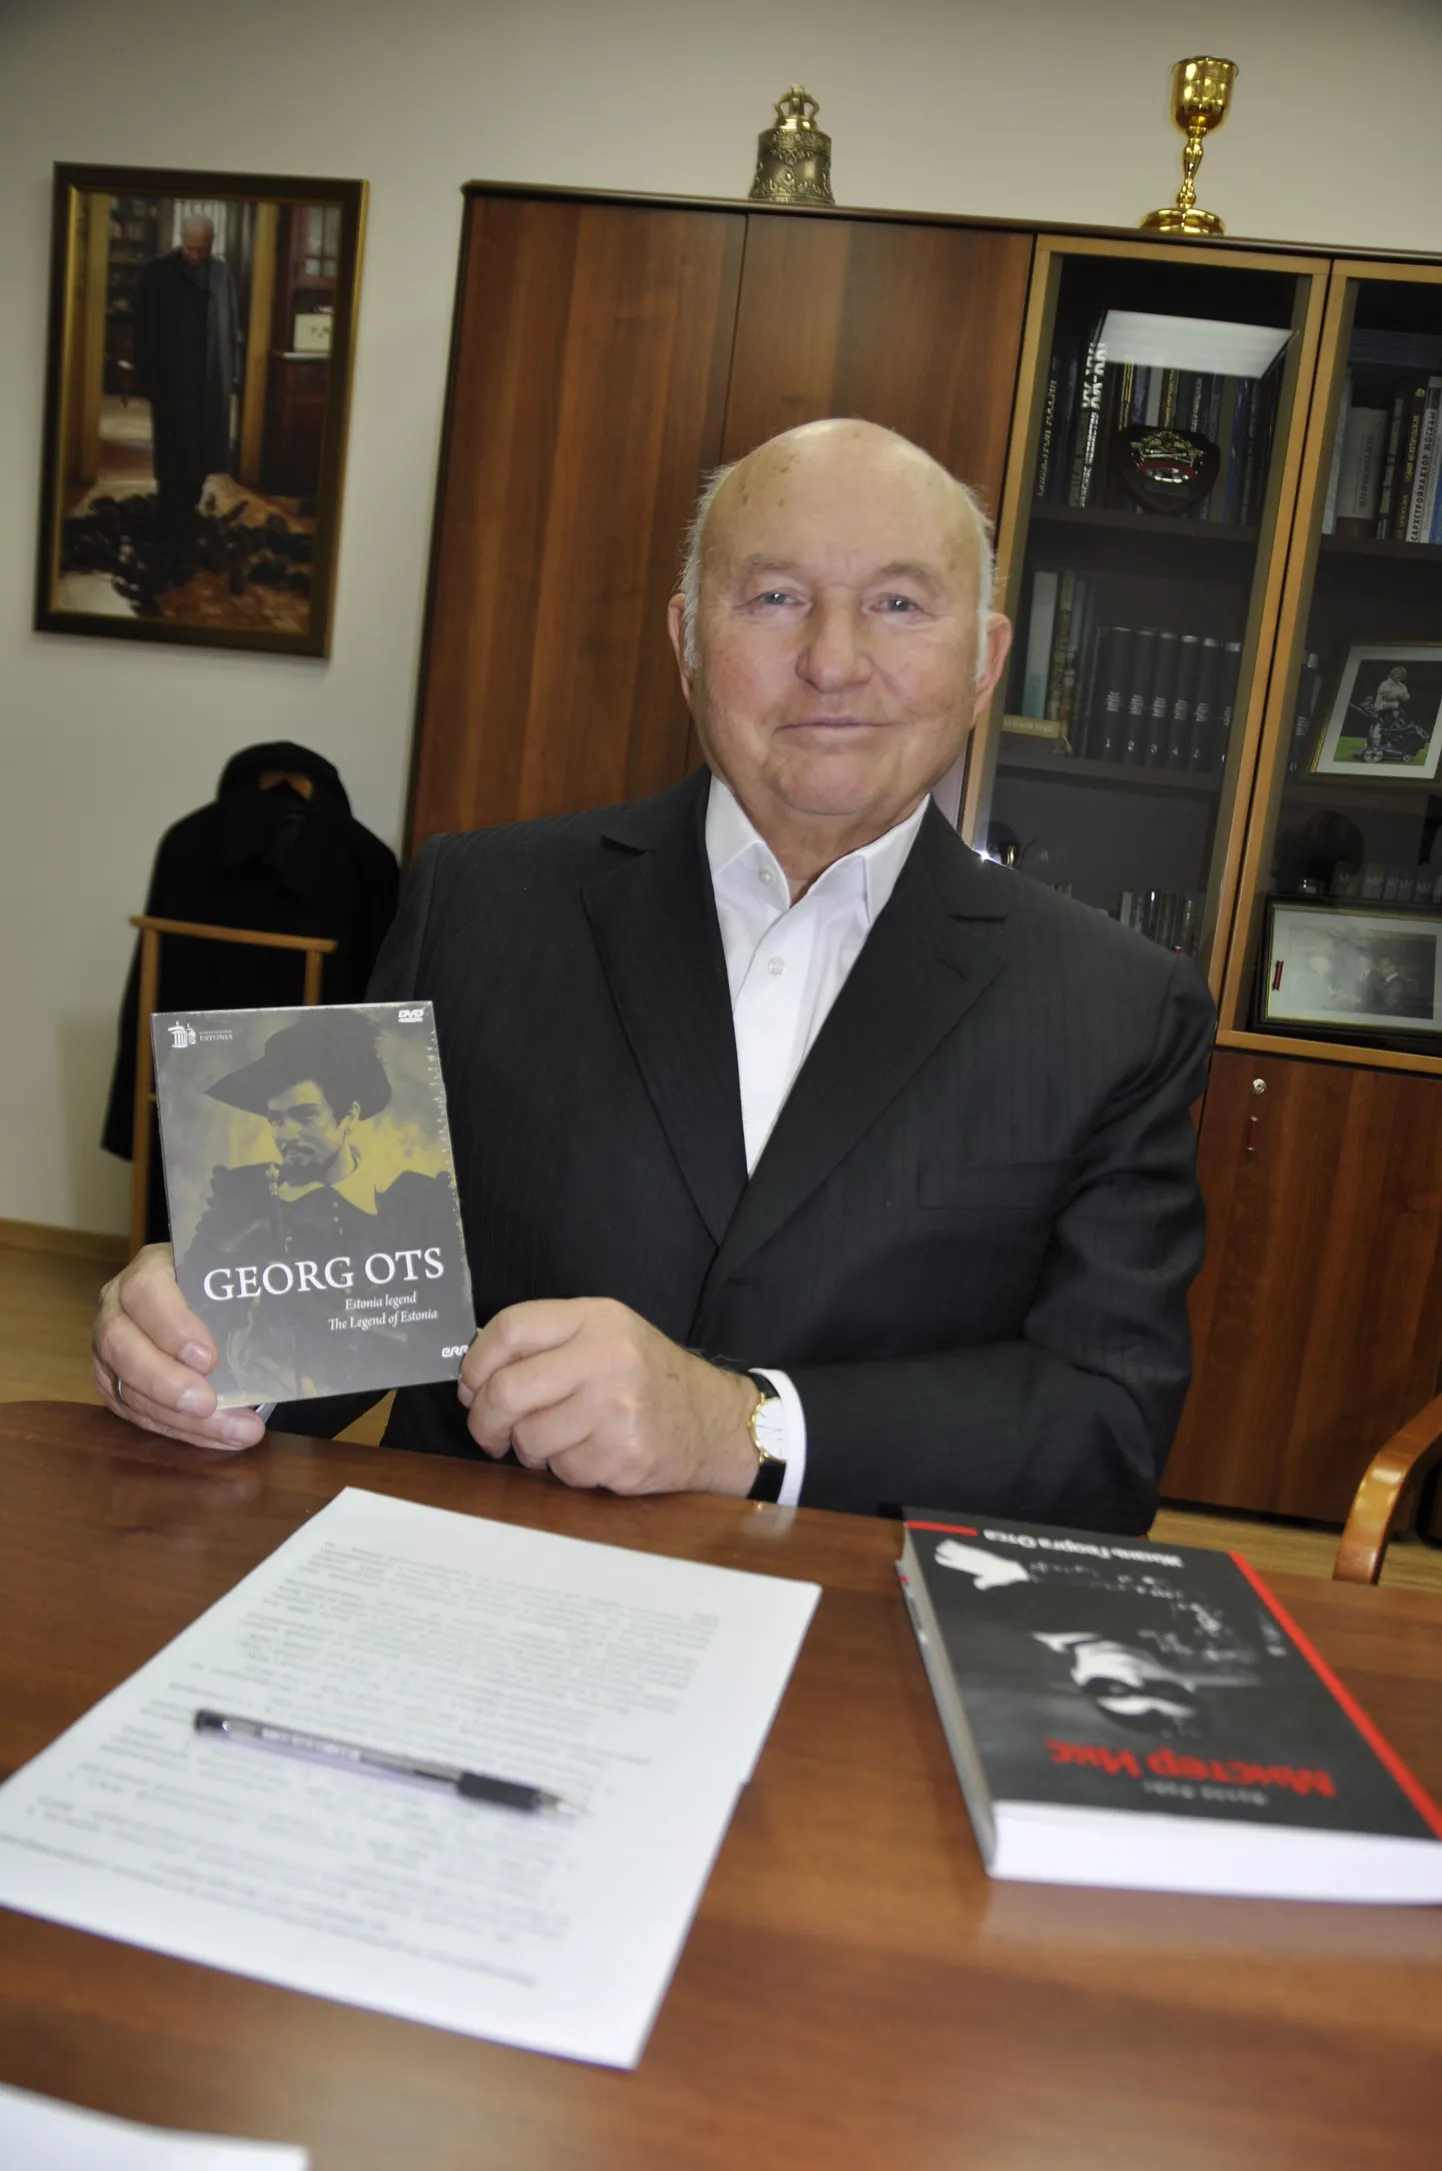 Postimees ajakirjanik kinkis Georg Otsa andunud austajale Juri Lužkovile laulukuulsuse vene keelde elulooraamatu, mille autoriks Kulle Raig, ja DVD, millel valik Estonia legendi aariaid.